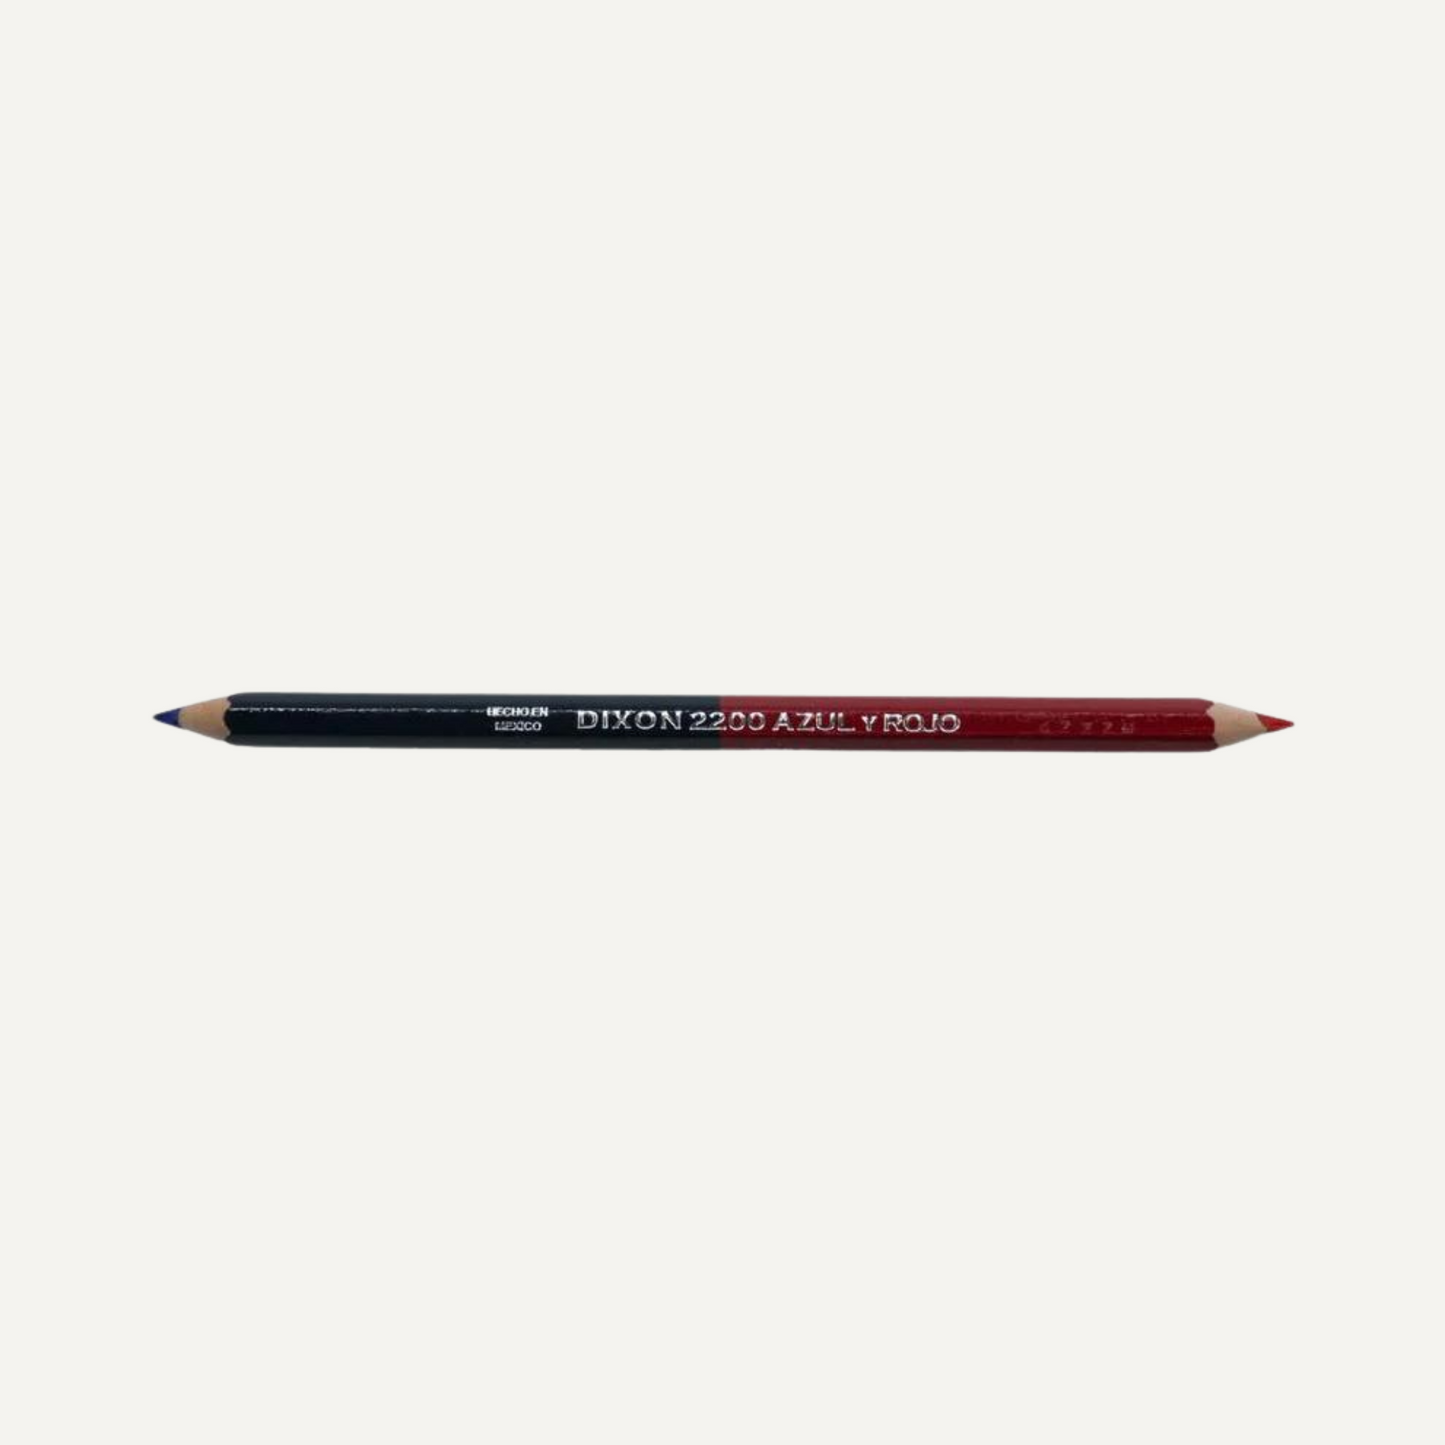 Dixon 2200 Azul y Rojo Pencil